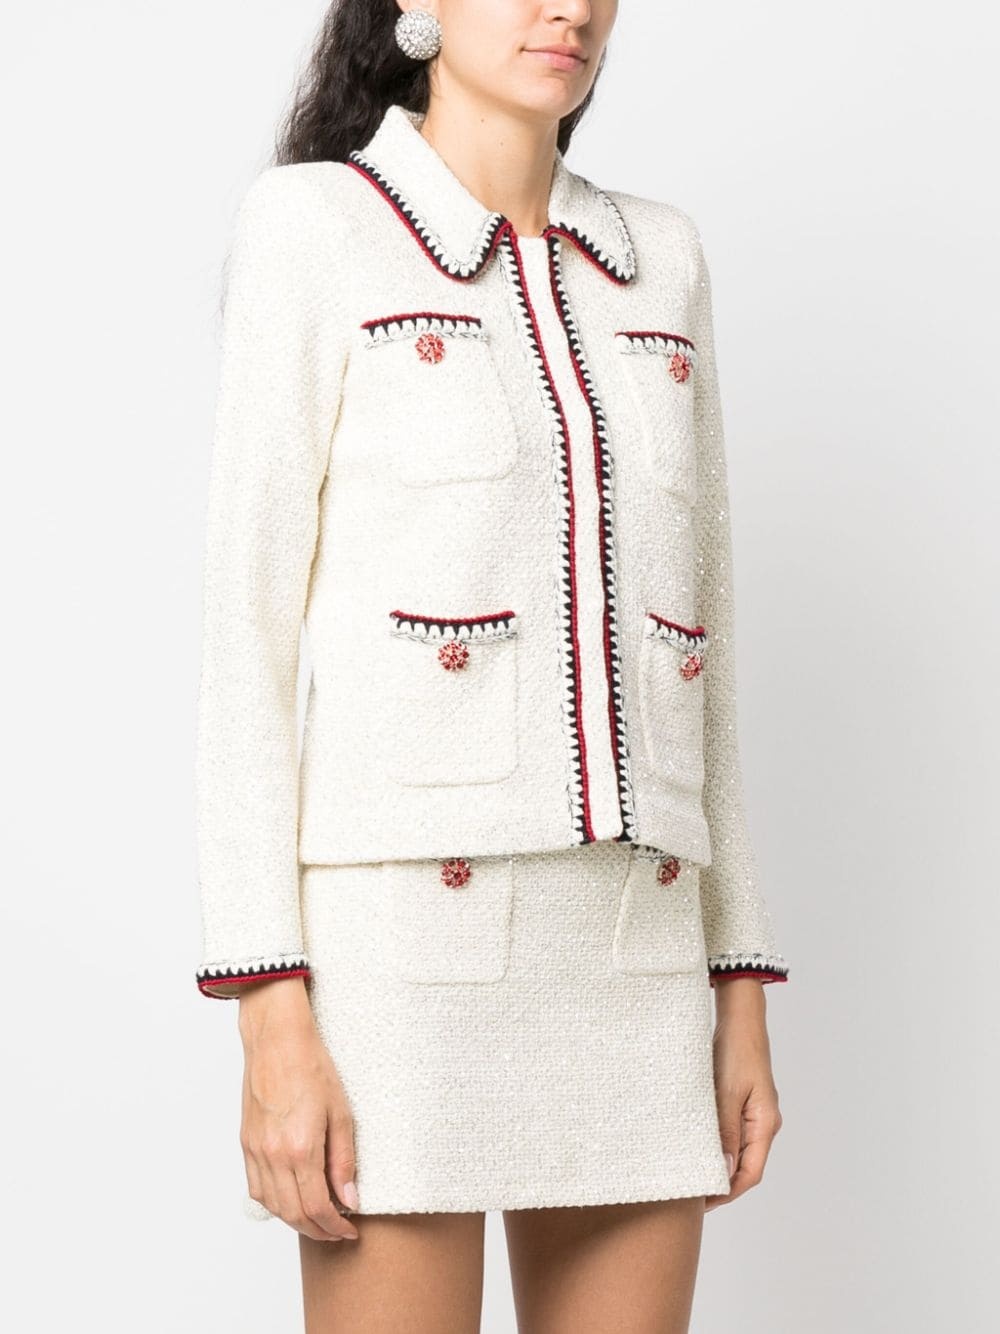 sequin-embellished knitted jacket - 3